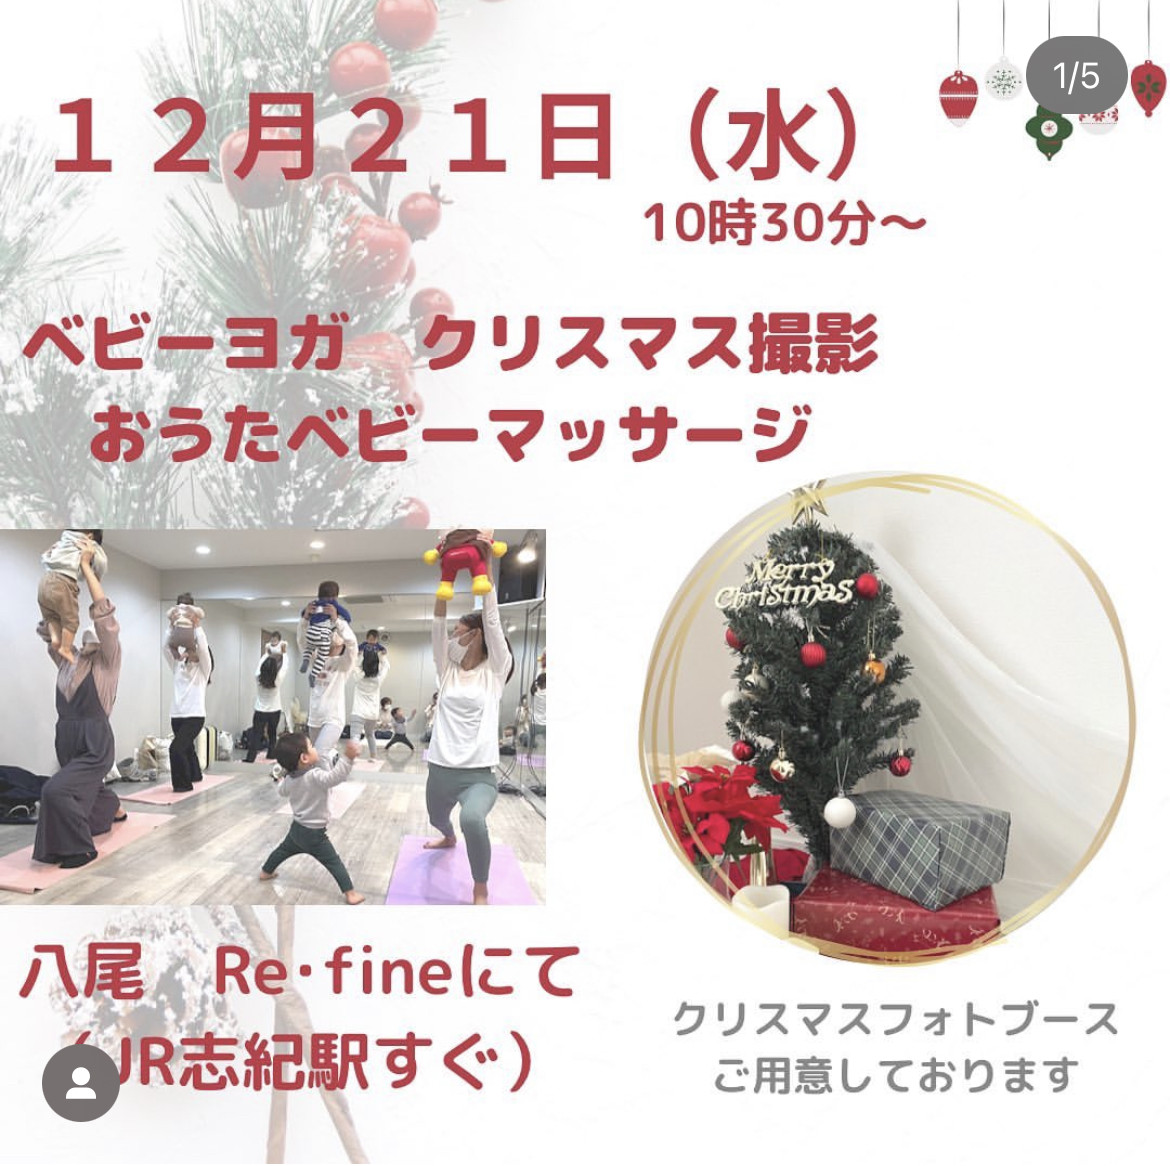 12/21(水)ベビーヨガ&ベビーマッサージ&クリスマス撮影会🎄